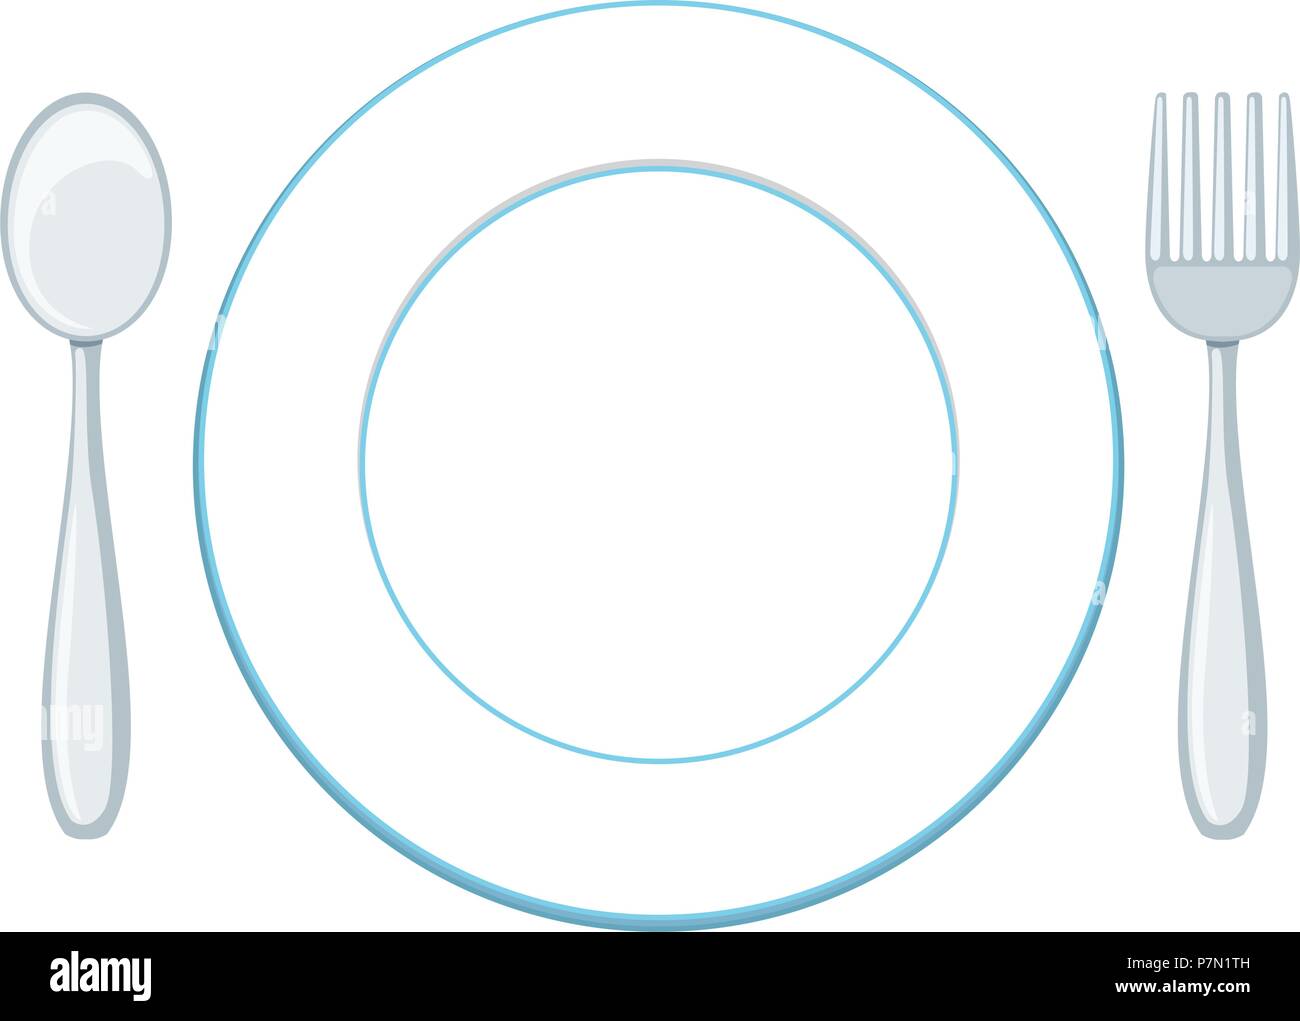 Eine Leere Teller Mit Loffel Und Gabel Abbildung Stock Vektorgrafik Alamy